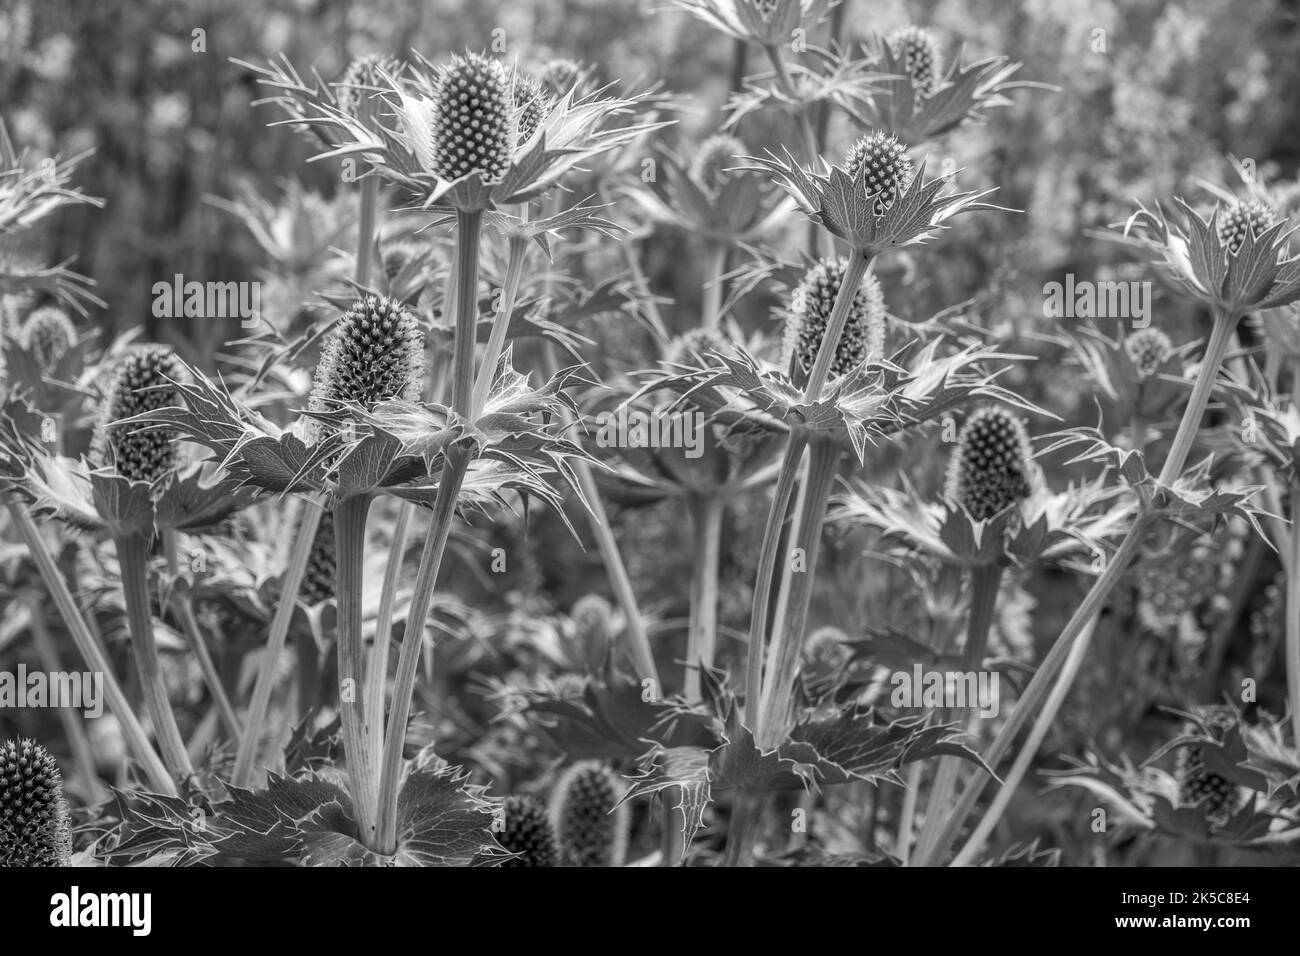 Eryngien, auch bekannt als Seeteule mit stacheligen Blättern und einer charakteristischen Rüsche um die Blütenköpfe in Schwarz und Weiß Stockfoto